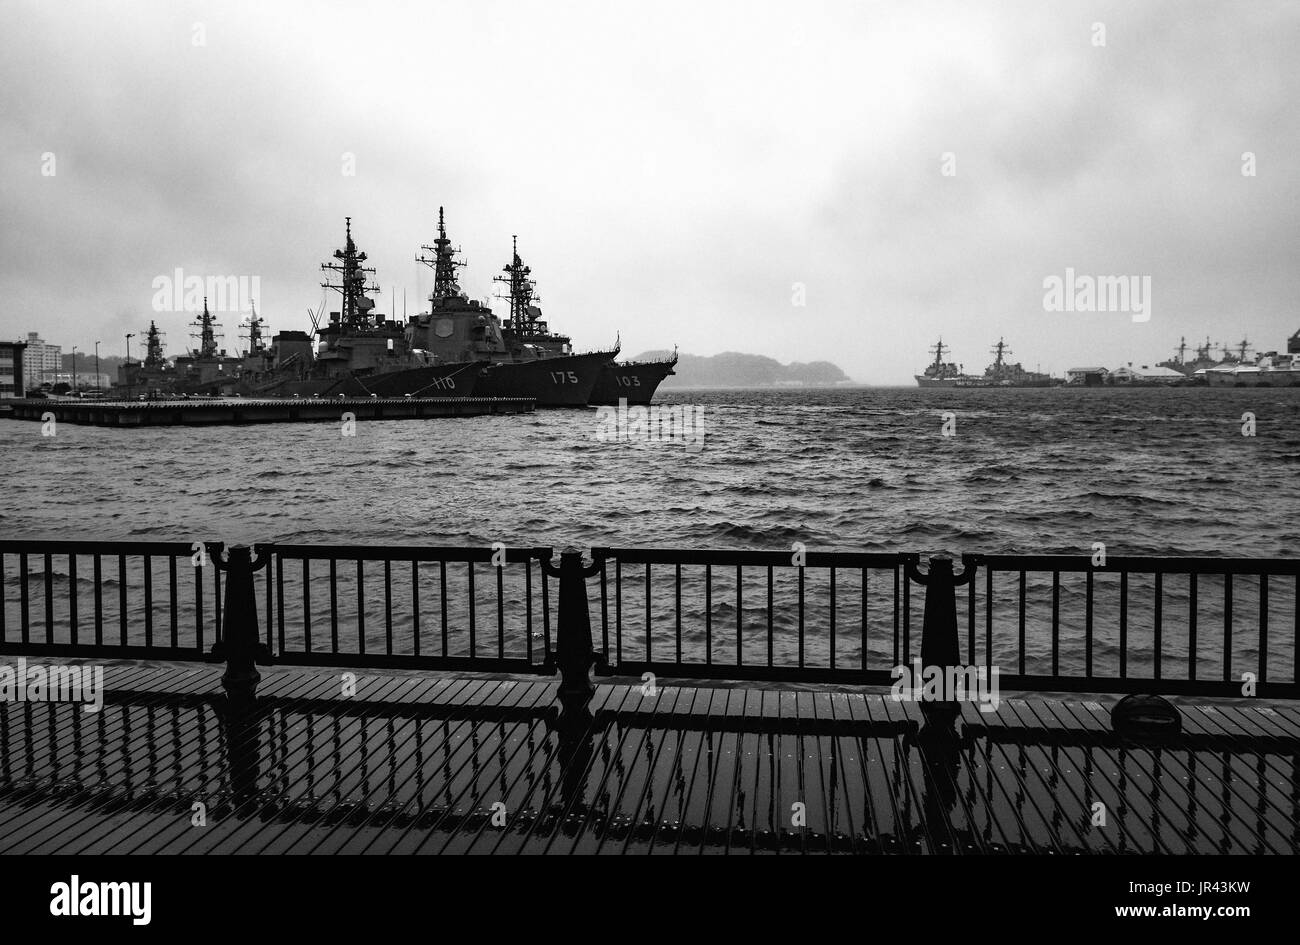 YOKOSUKA, Giappone - 11 Aprile 2017 - Arleigh Burke-Cacciatorpediniere classe ancorato in acque tempestose presso gli Stati Uniti le attività della flotta Yokosuka Navy base Foto Stock